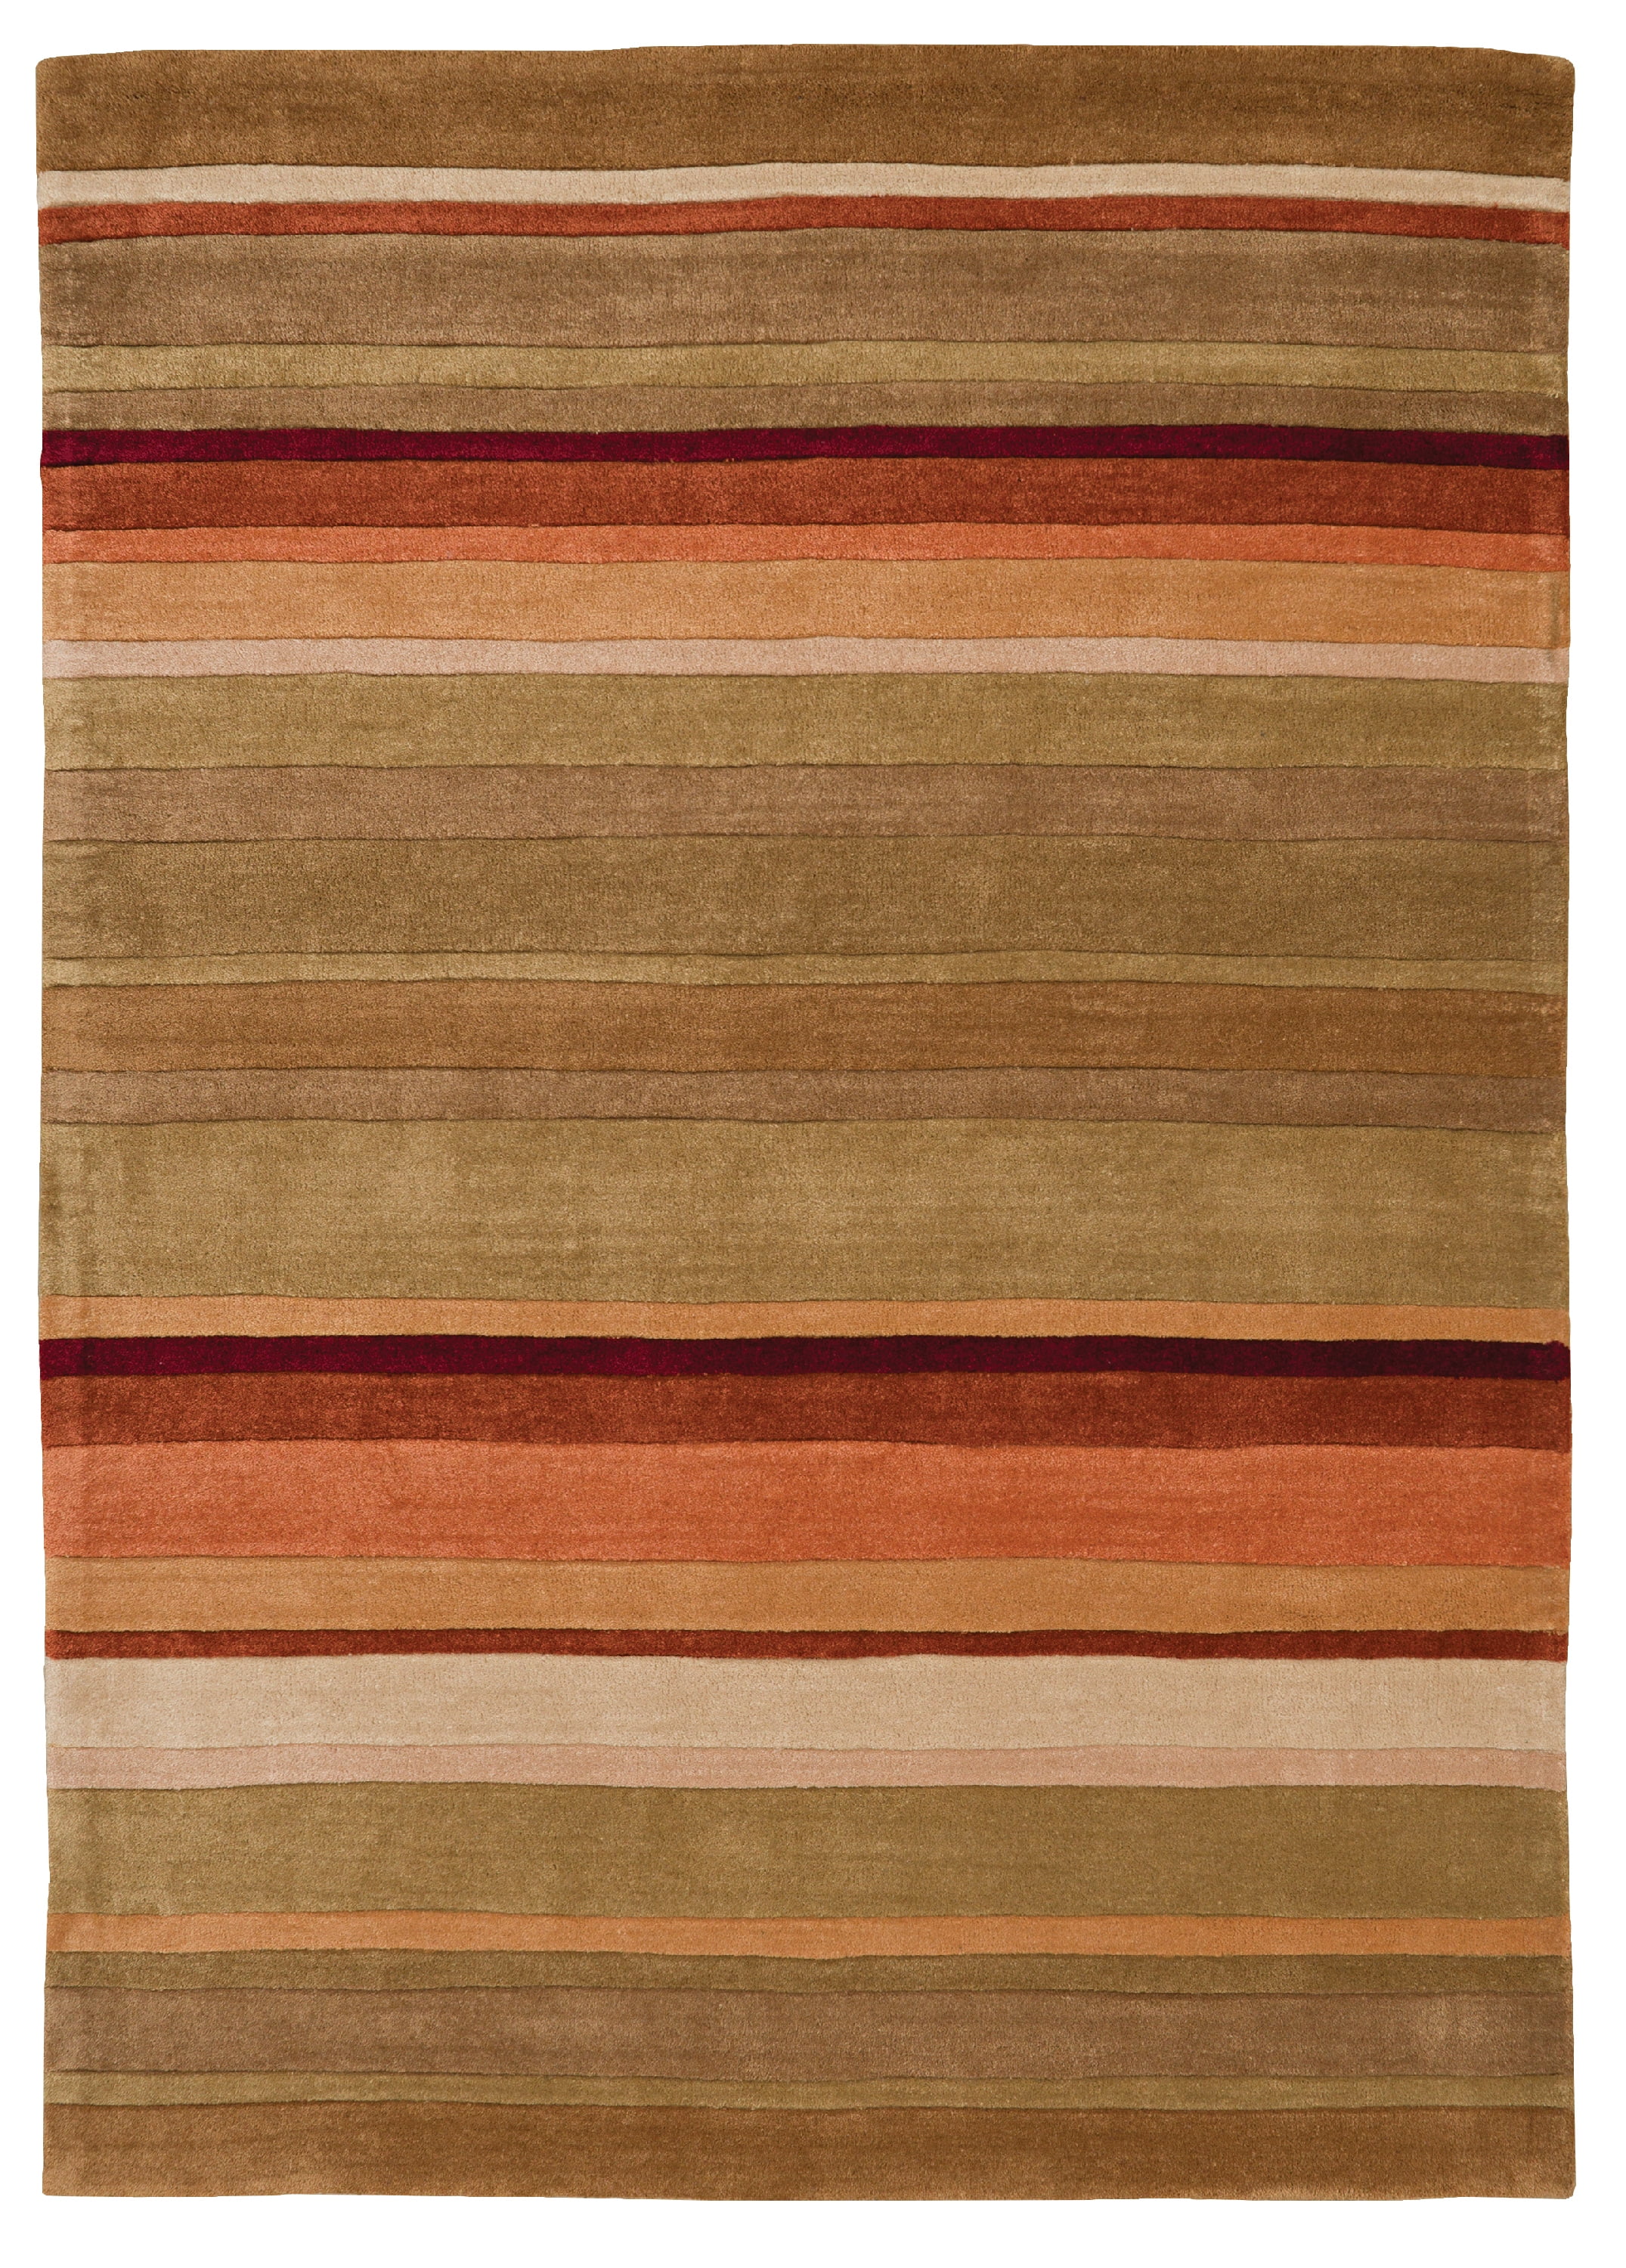 ft 3' 1 x 4' 9 Deep Red/Rust Modern Chobi Design Handmade Gabbeh Rug Wool 